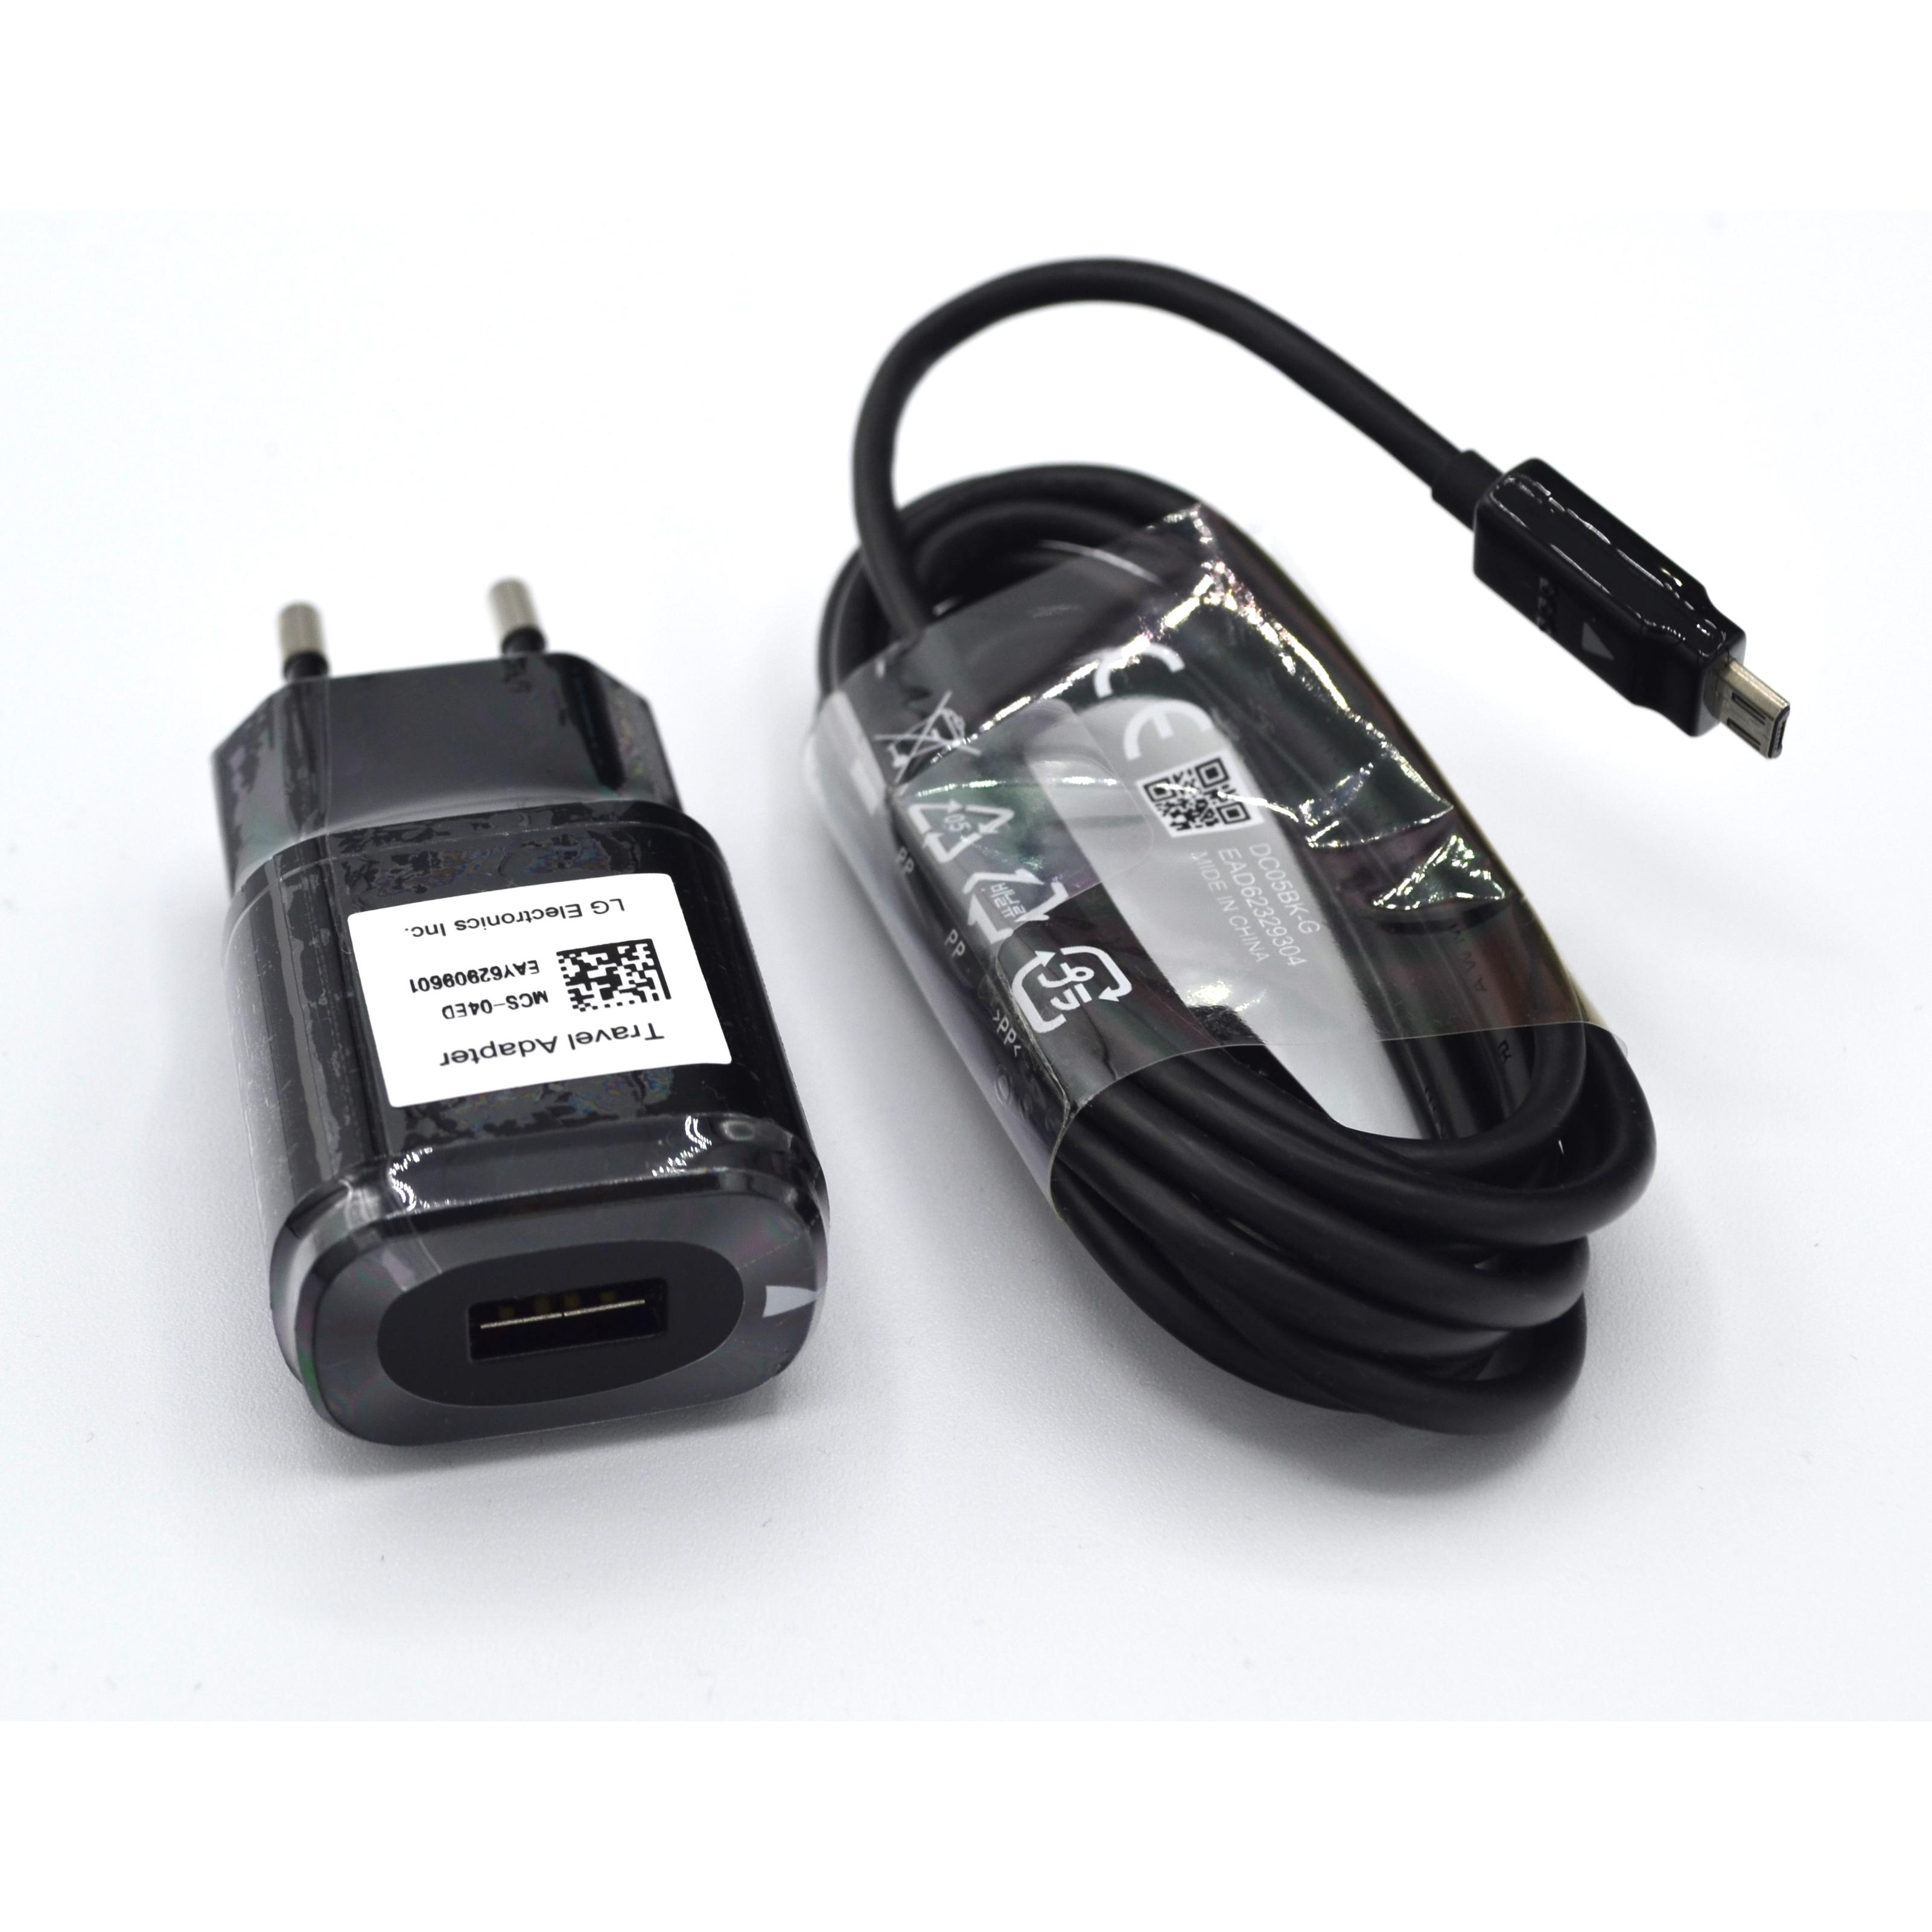 LG - LG MCS-04ER Cargador Original 1,8A + Cable Micro-USB para LG G2, G3, Nexus, bulk